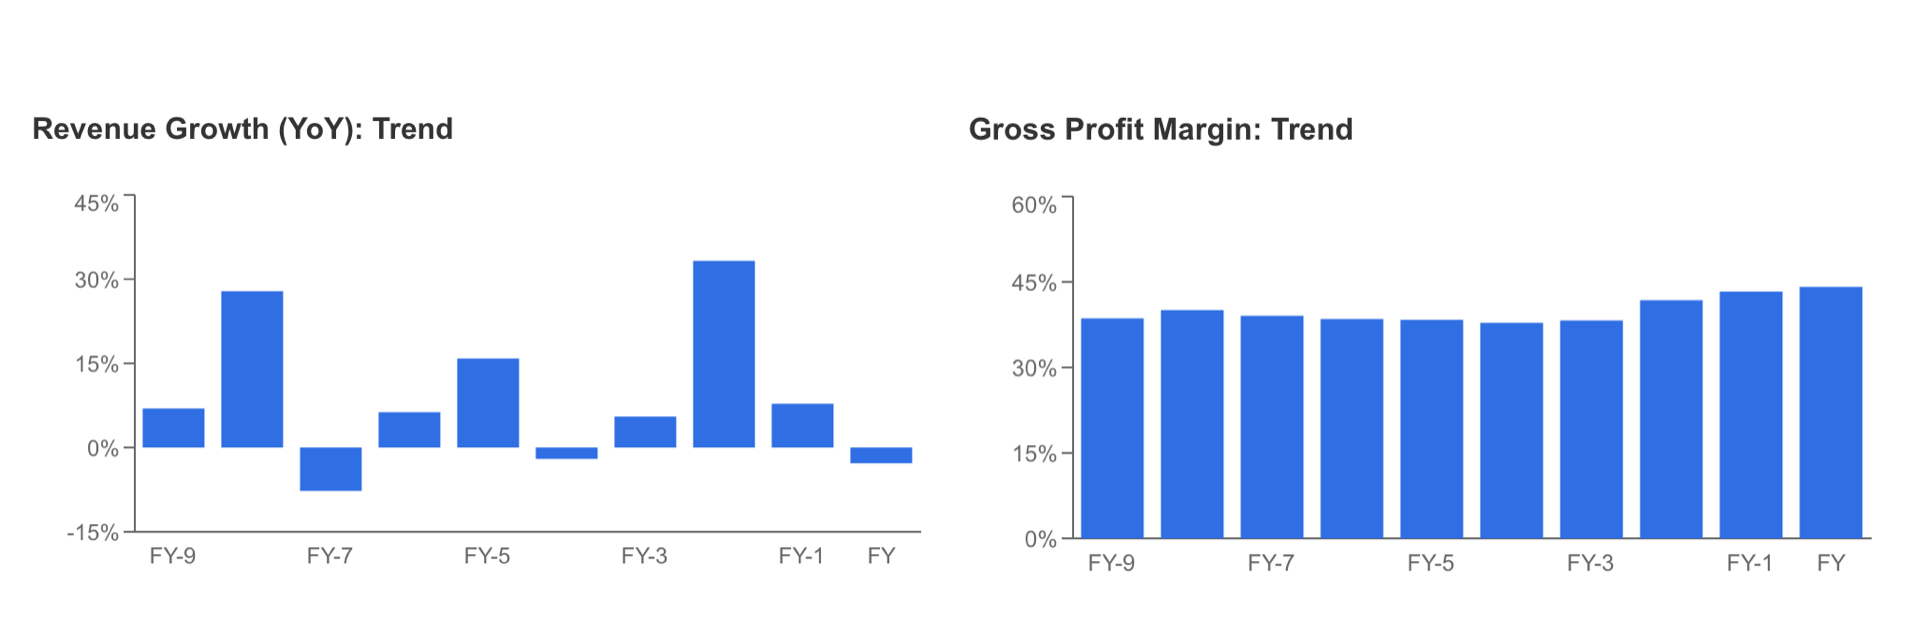 Revenue Growth, Gross Profit Margins